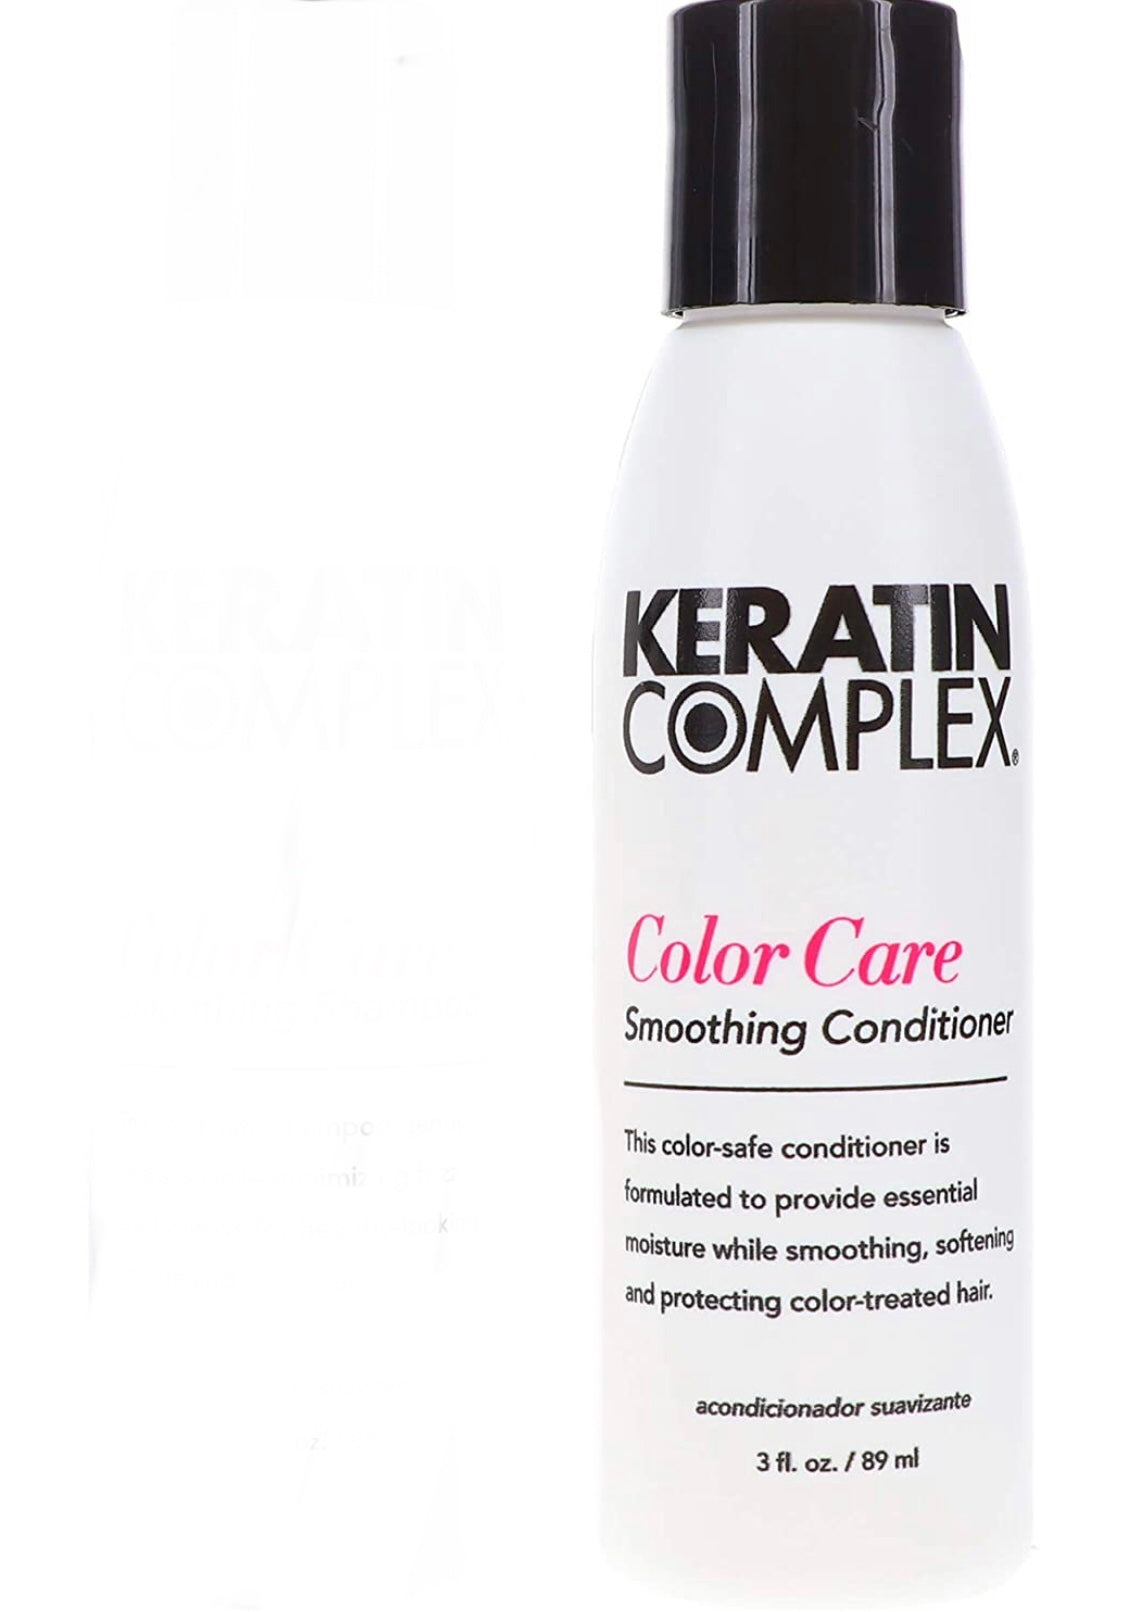 Keratin complex - Color Care conditioner 3 fl. oz./ 89 ml